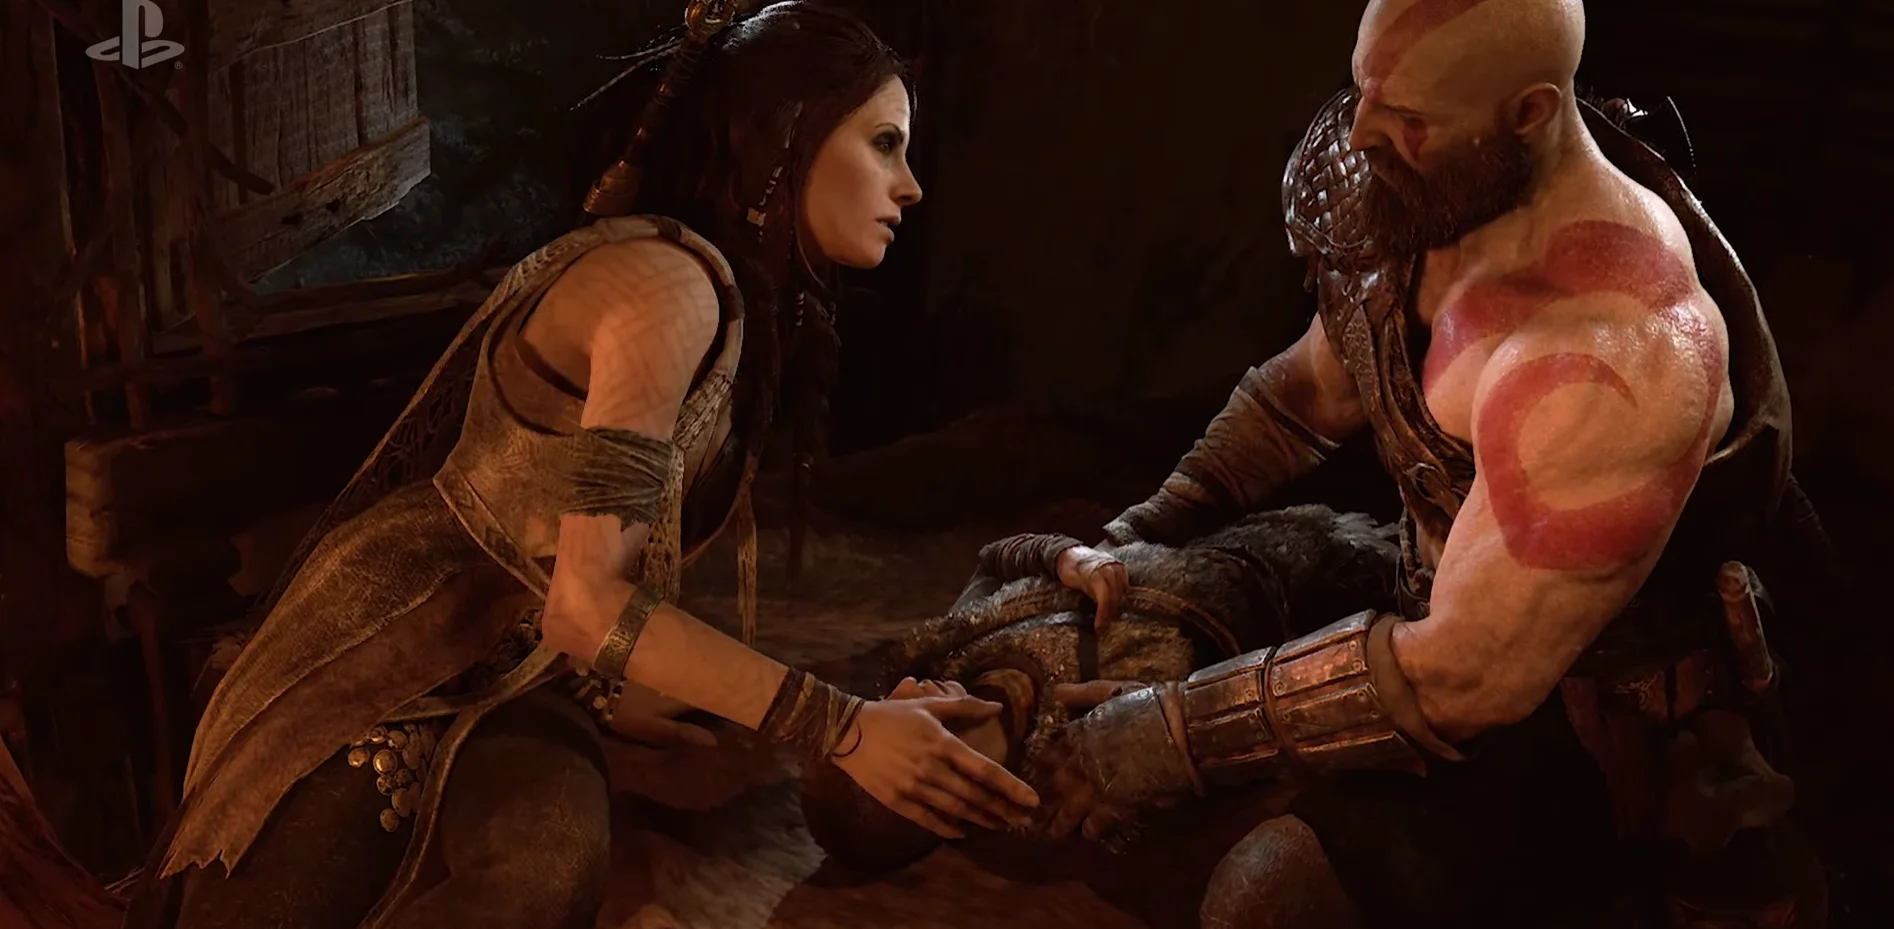 Разбираем трейлер God of War с E3 2017. Что нового мы узнали? - фото 2